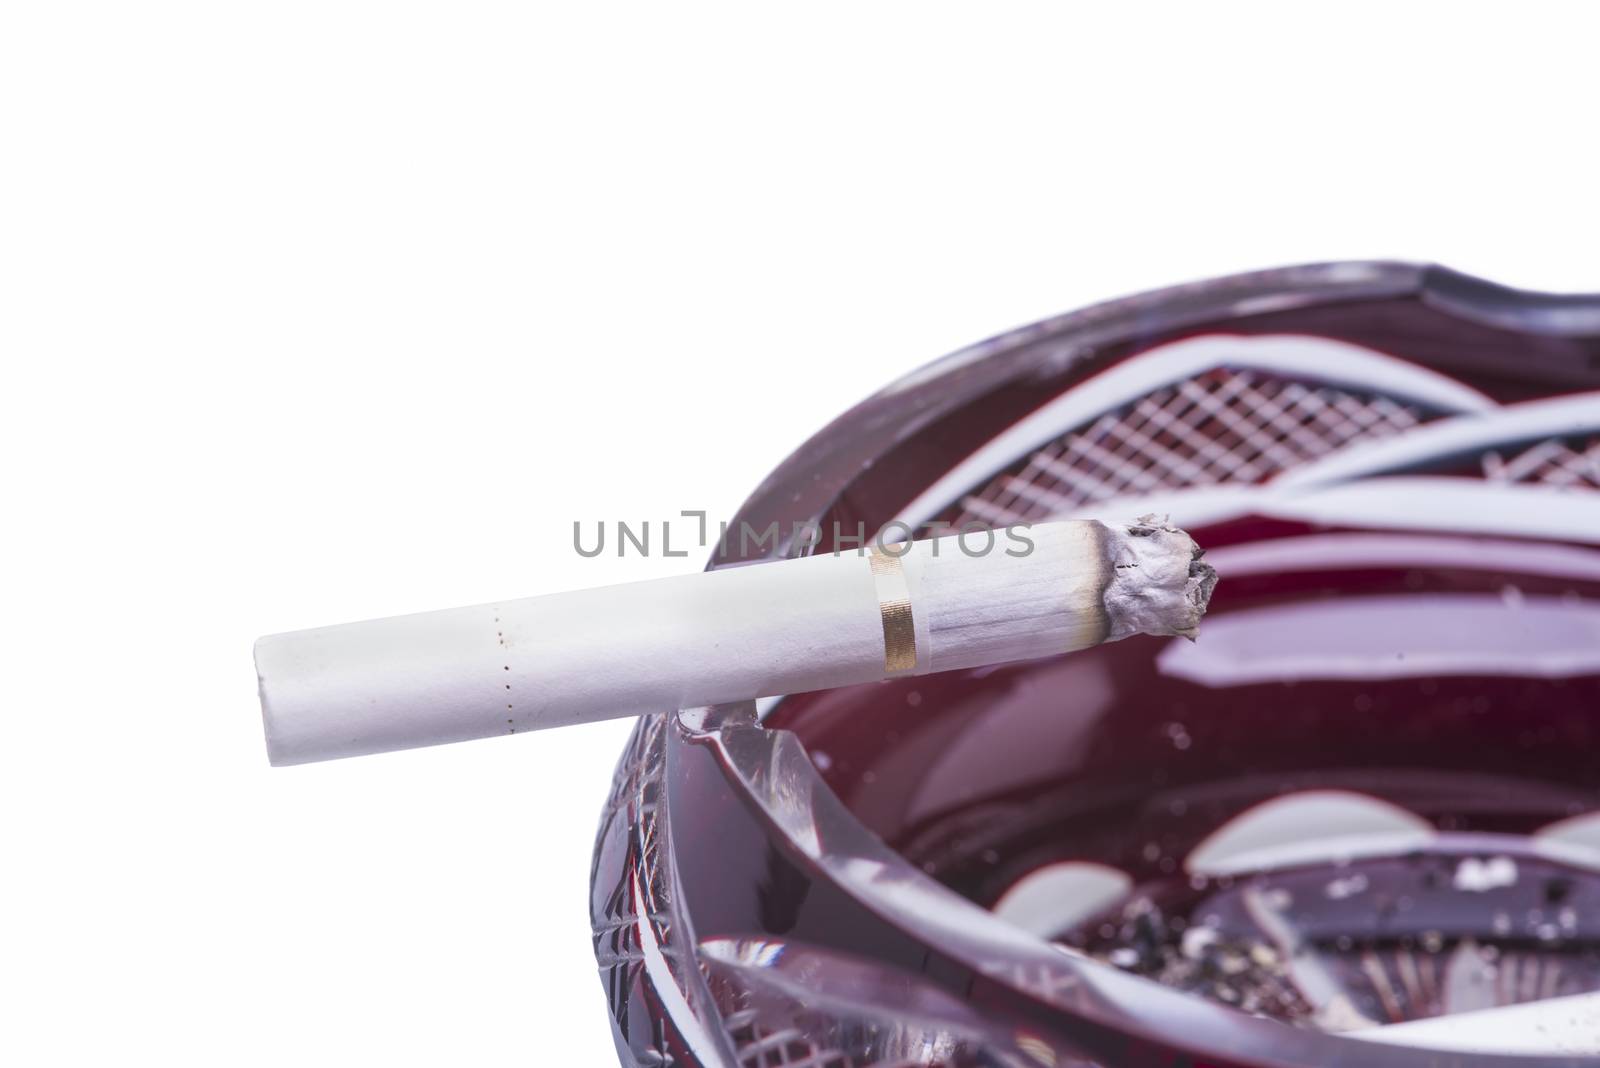 Close image of cigarette in ashtray by savcoco